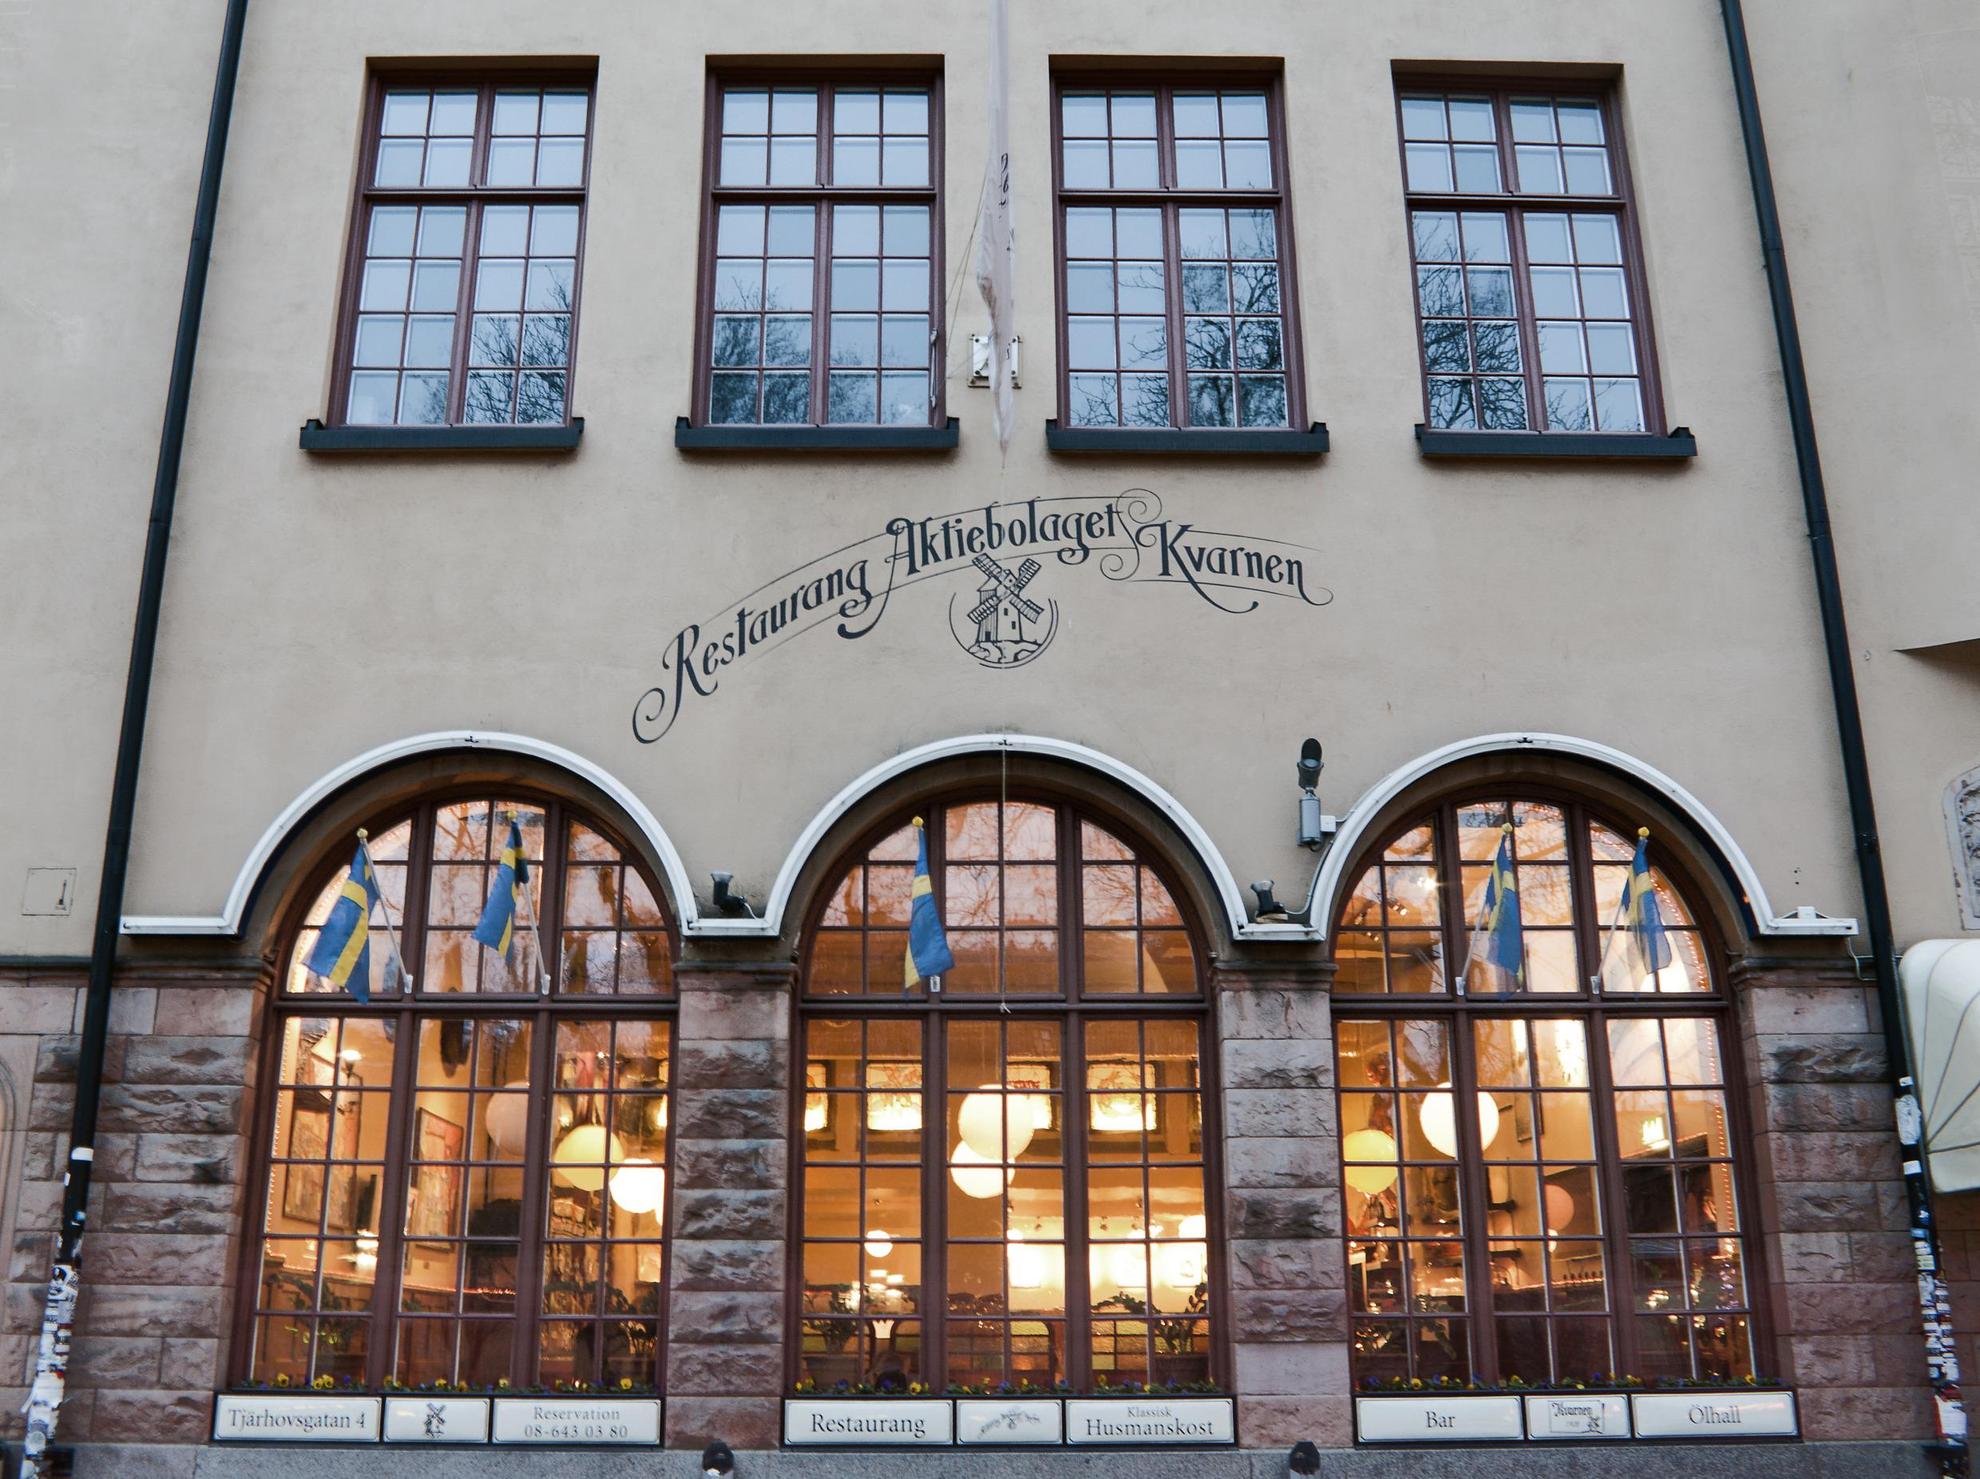 Die Außenansicht des Restaurants Kvarnen in Stockholm.